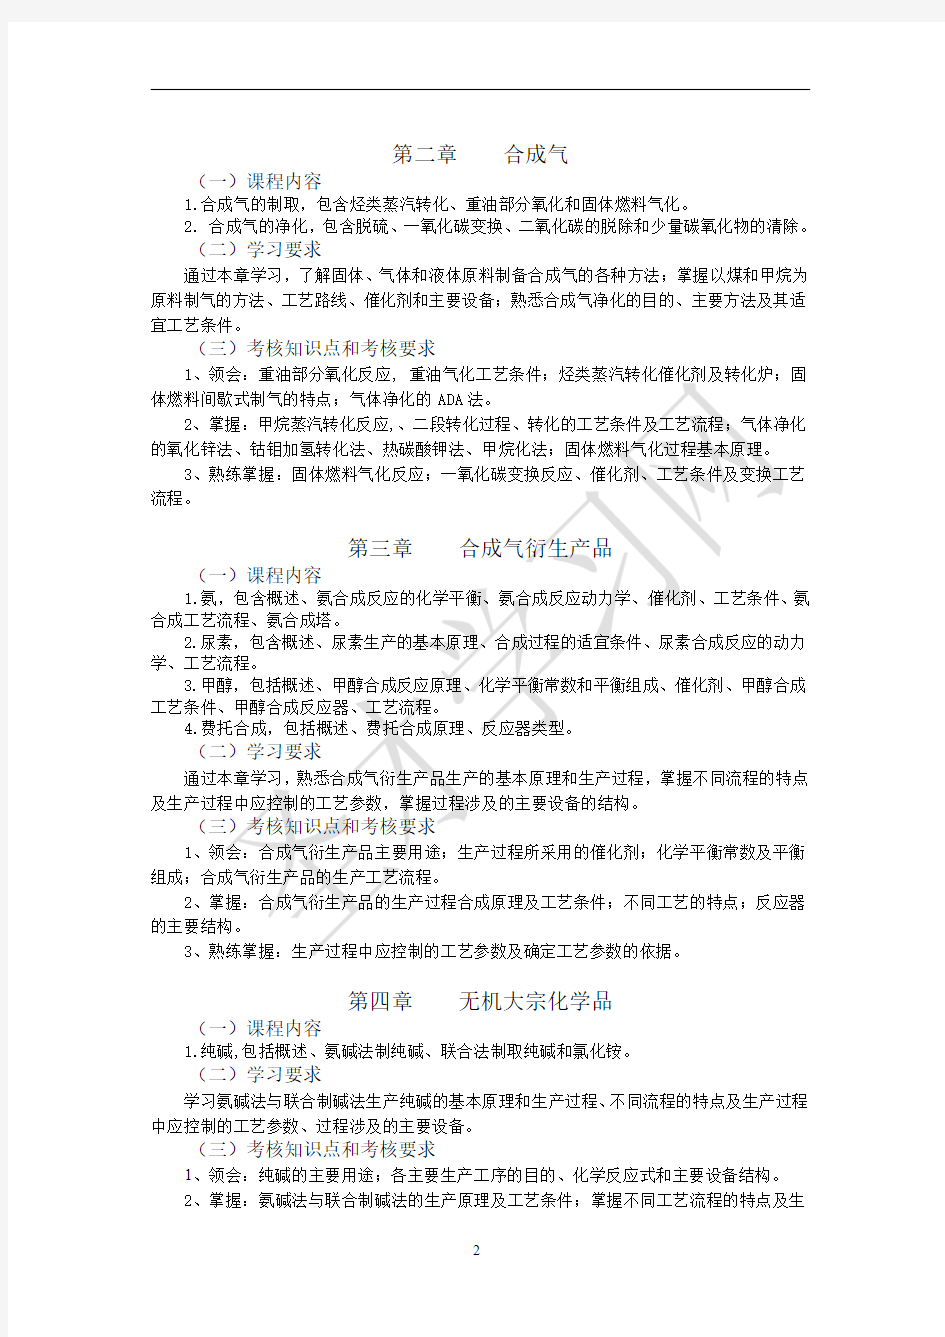 江苏省自考30450化工工艺学(二)(高纲1351)